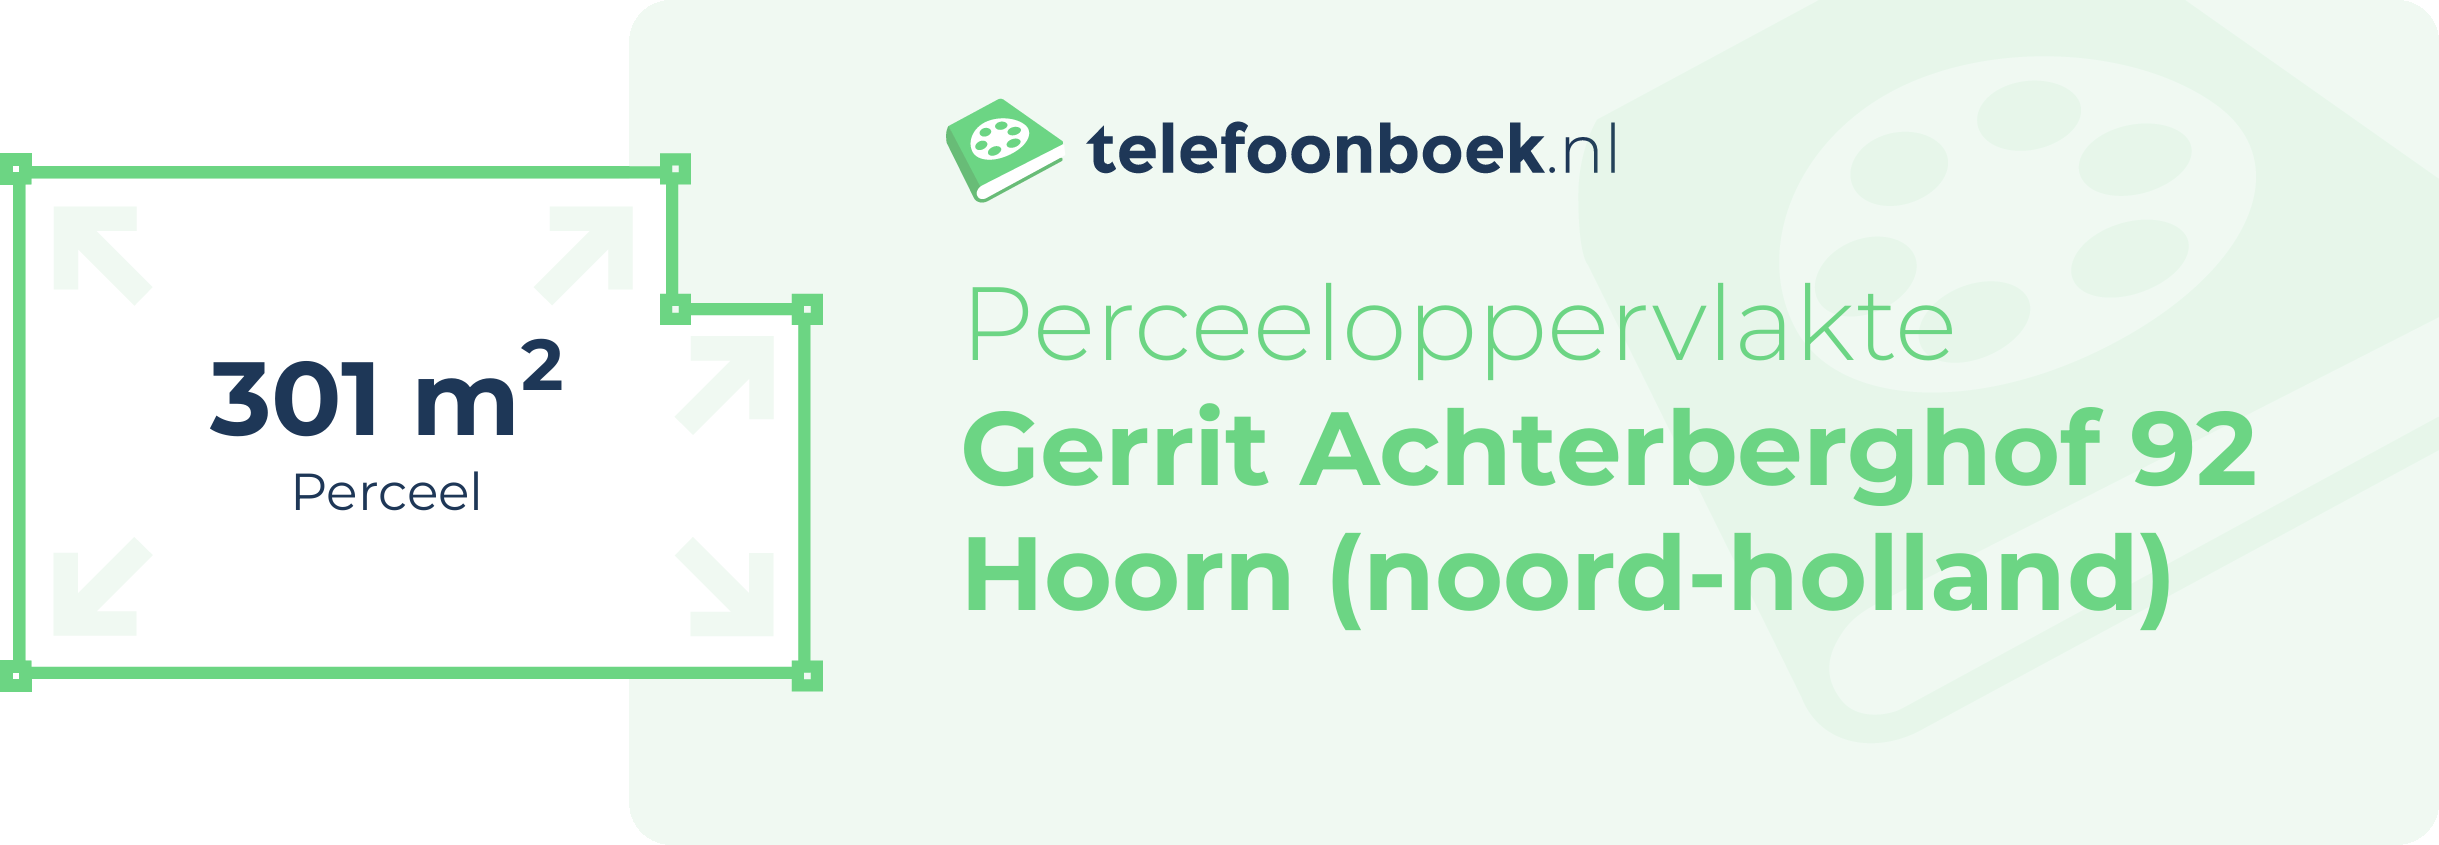 Perceeloppervlakte Gerrit Achterberghof 92 Hoorn (Noord-Holland)